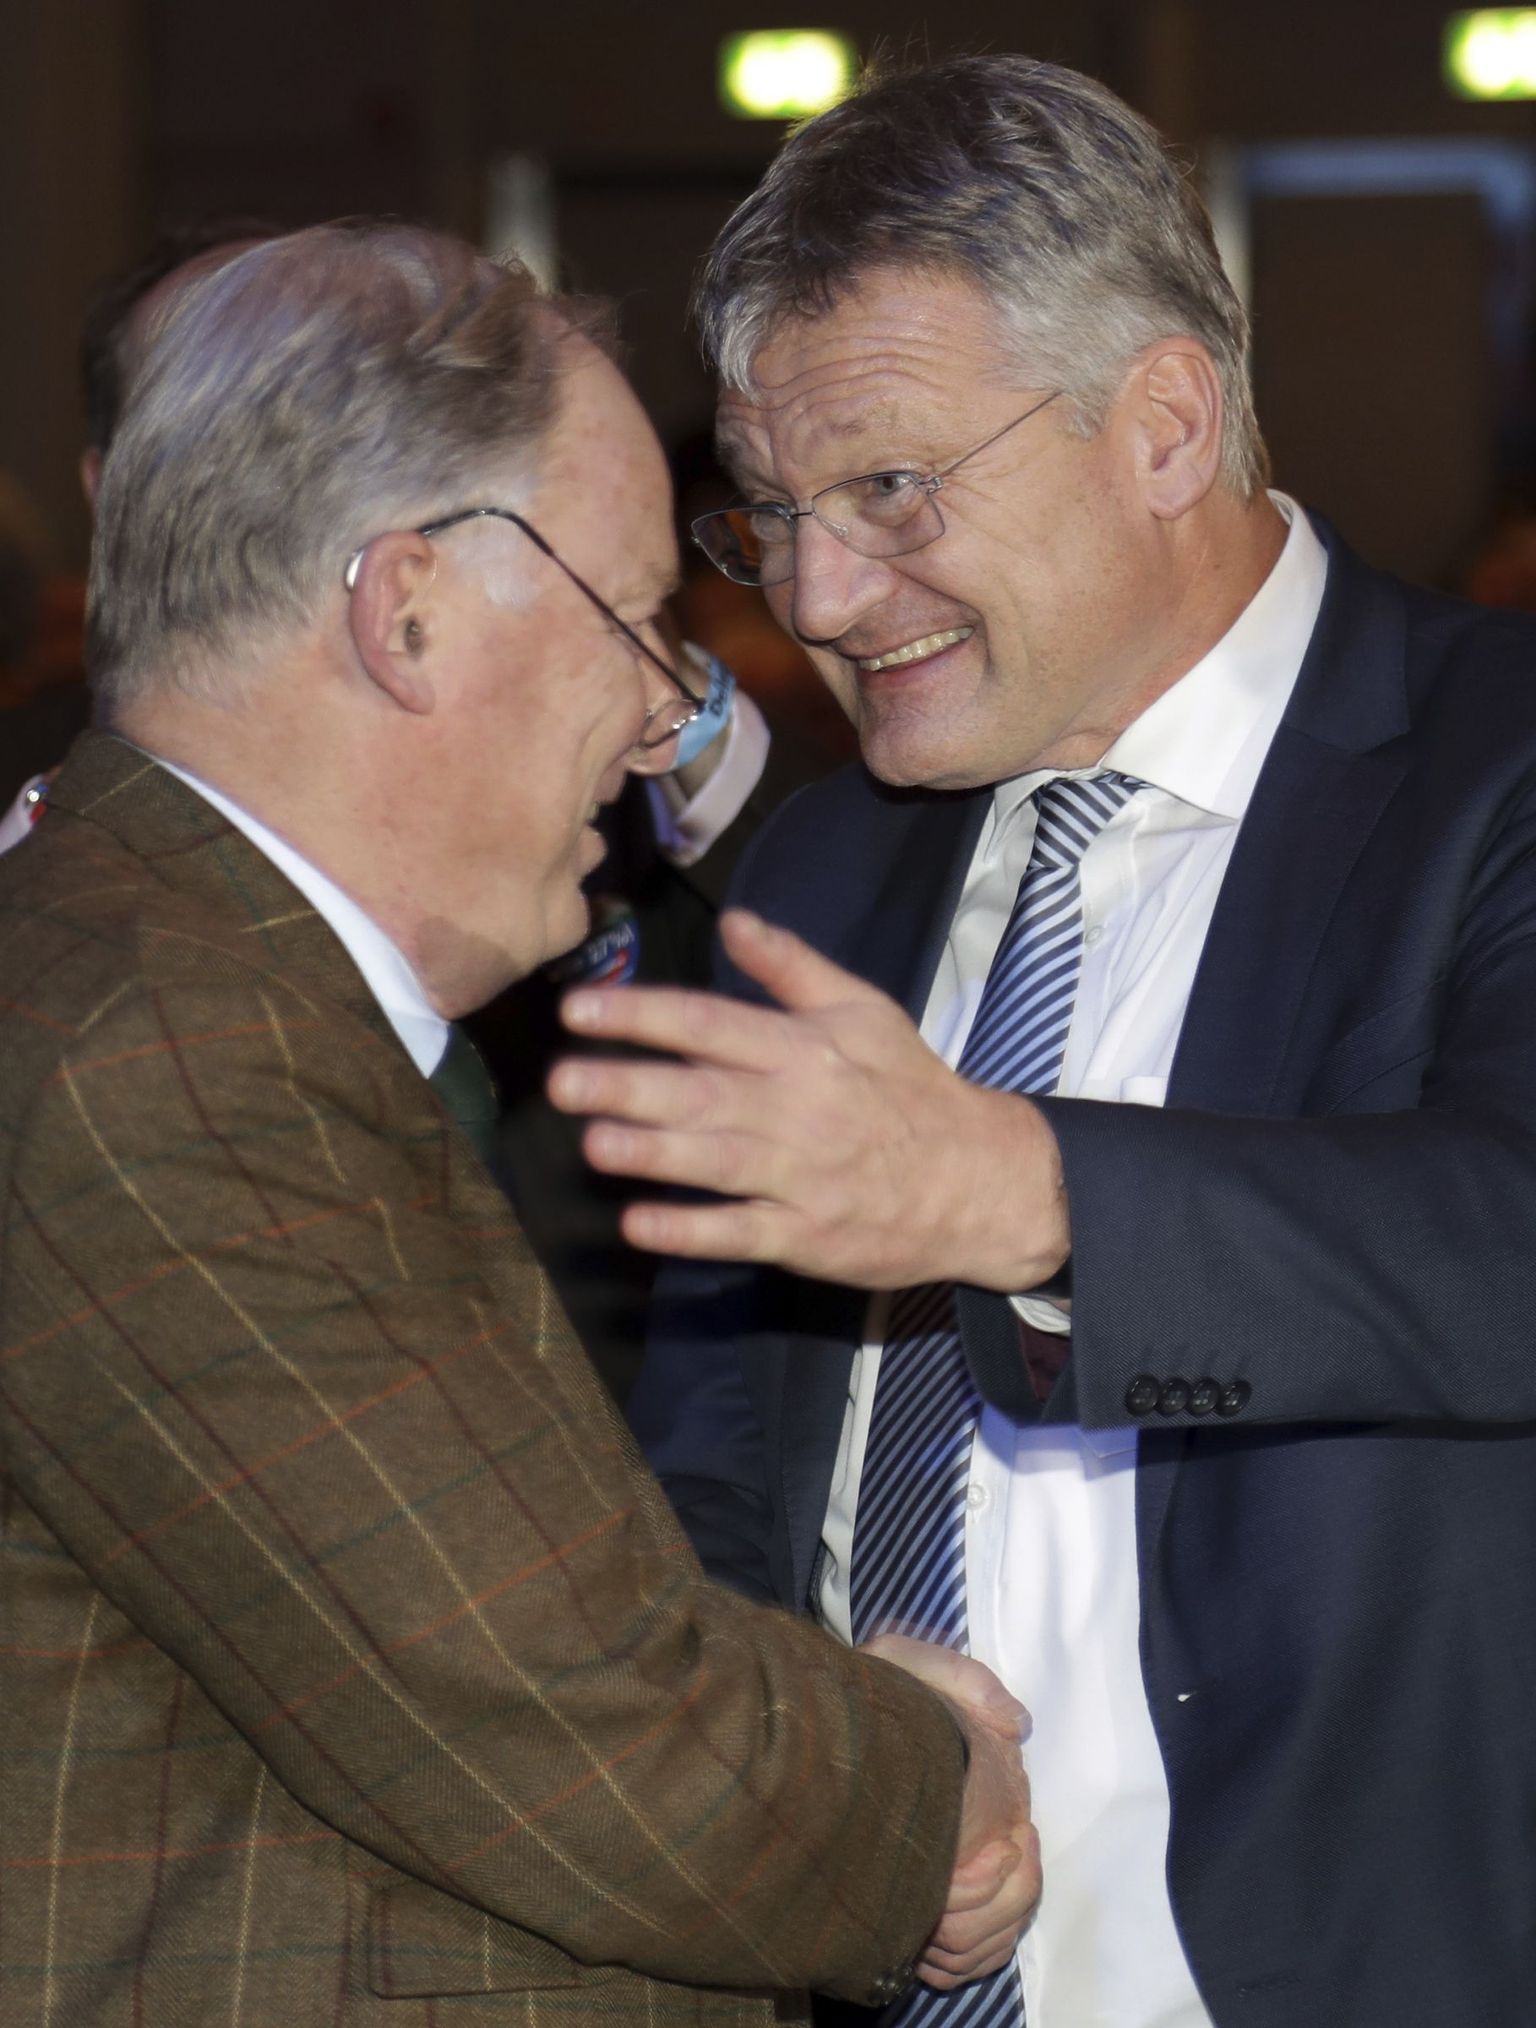 Jörg Meuthen ja Alexander Gauland üksteist õnnitlemas.